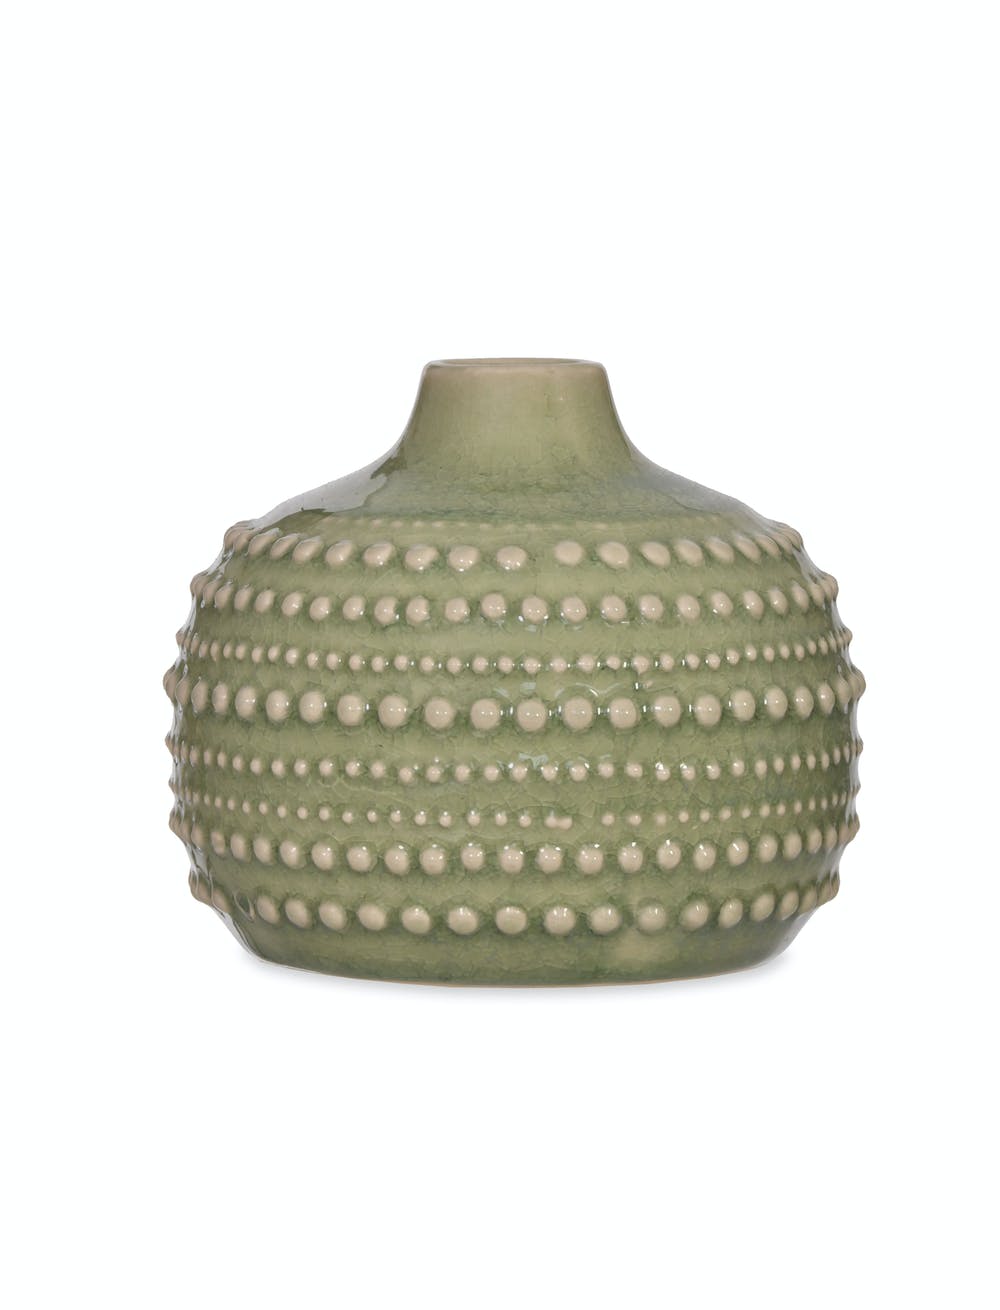 Garden Trading Castello Vase - Medium - Light Green